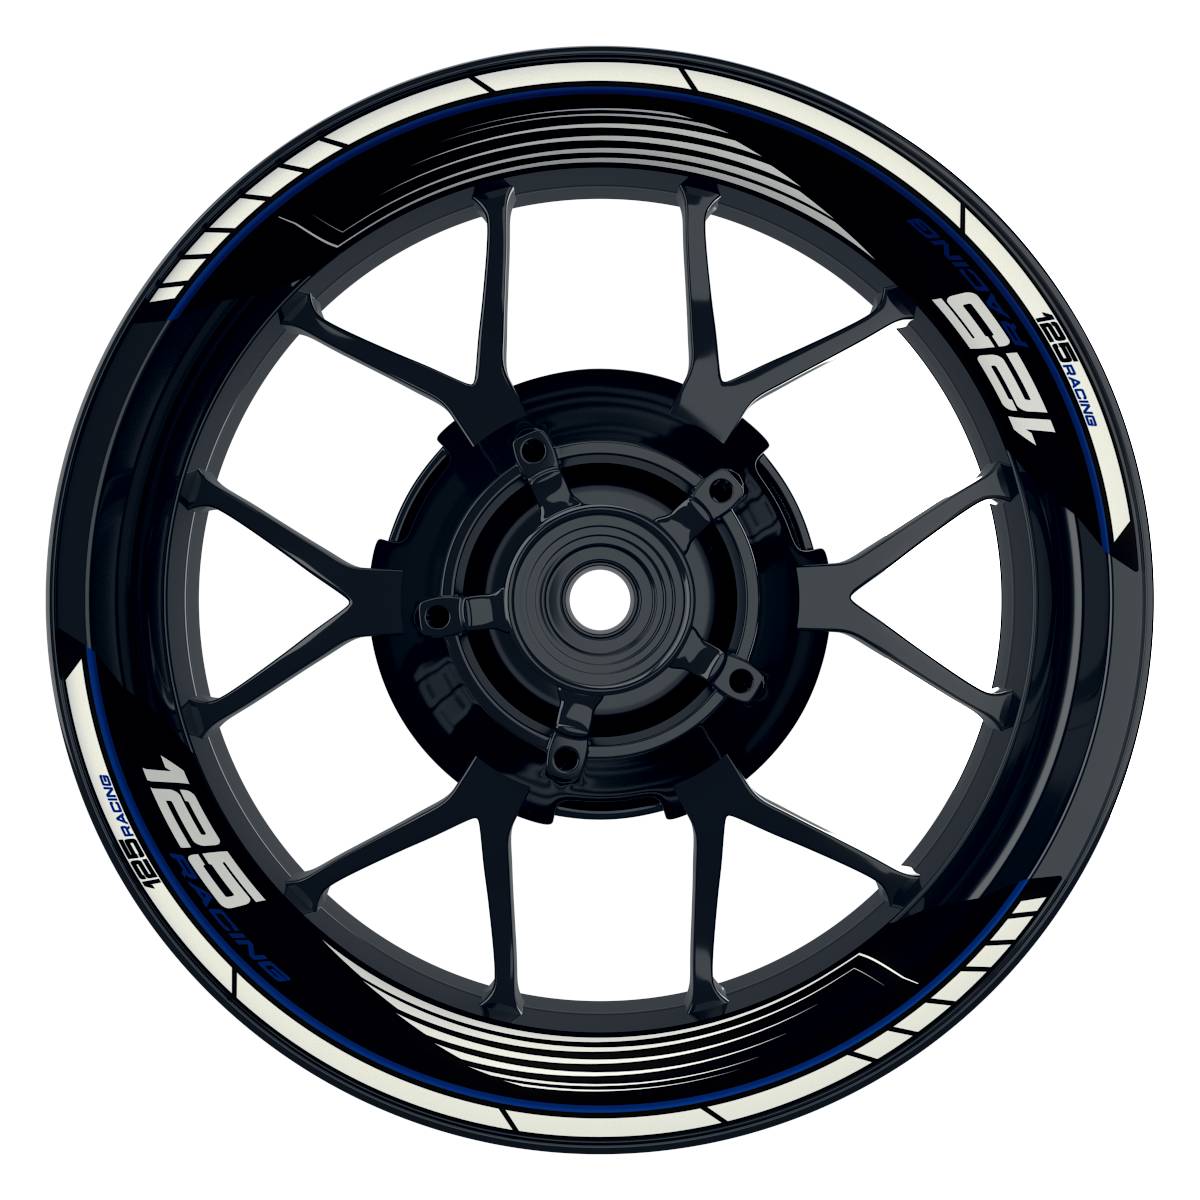 KTM Racing 125 SAW schwarz blau Frontansicht